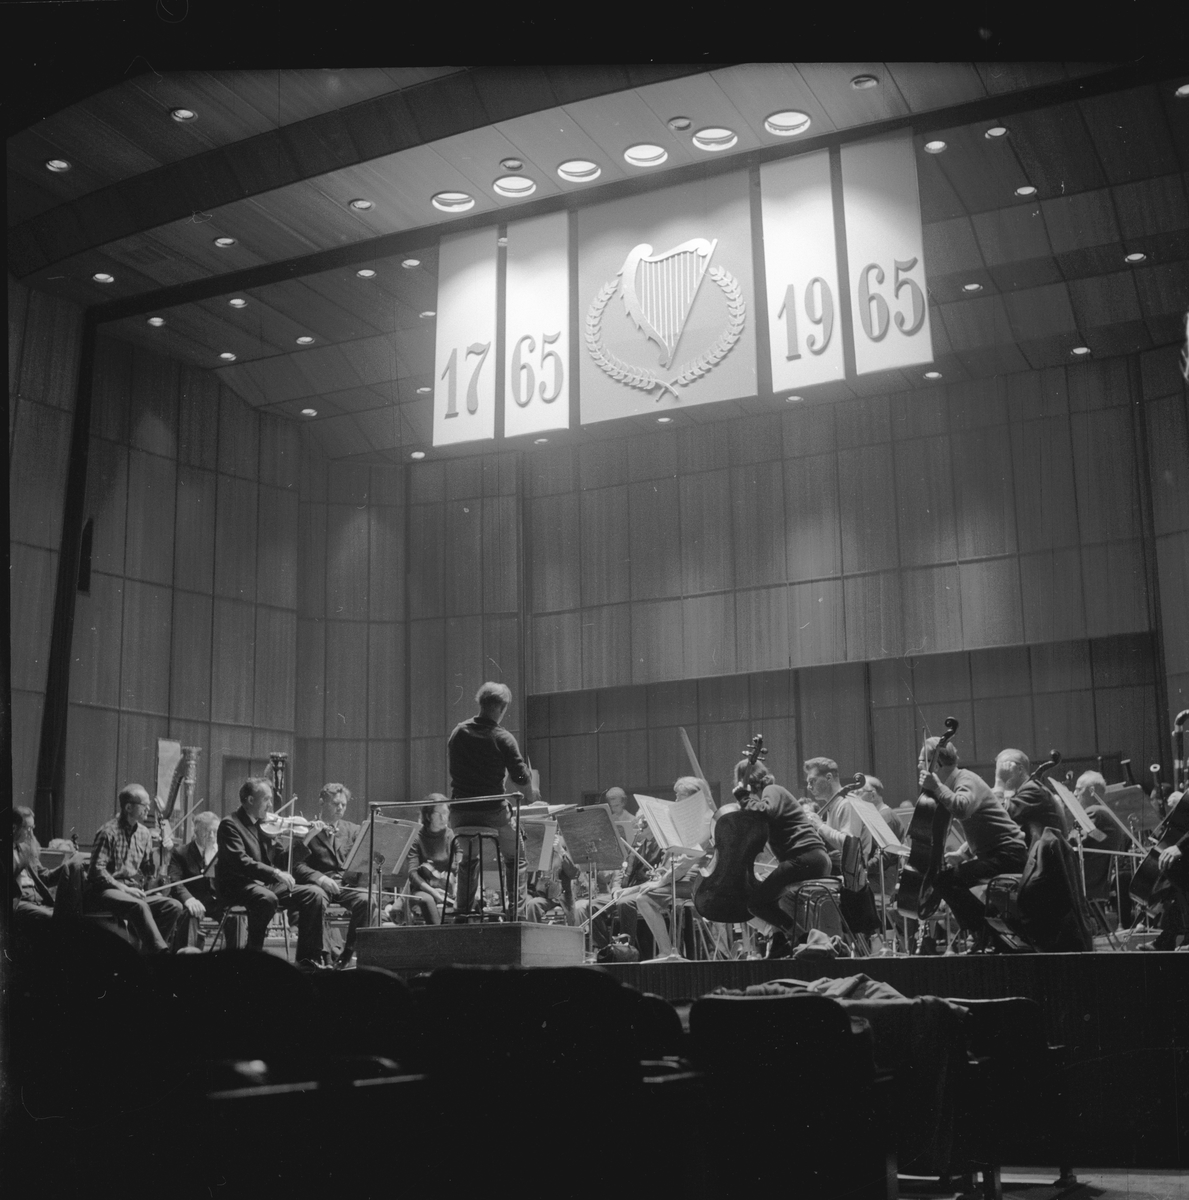 Fra Bergen Filharmoniske orkester 200 års jubileum. Orkester spiller. Fotografert september 1965.